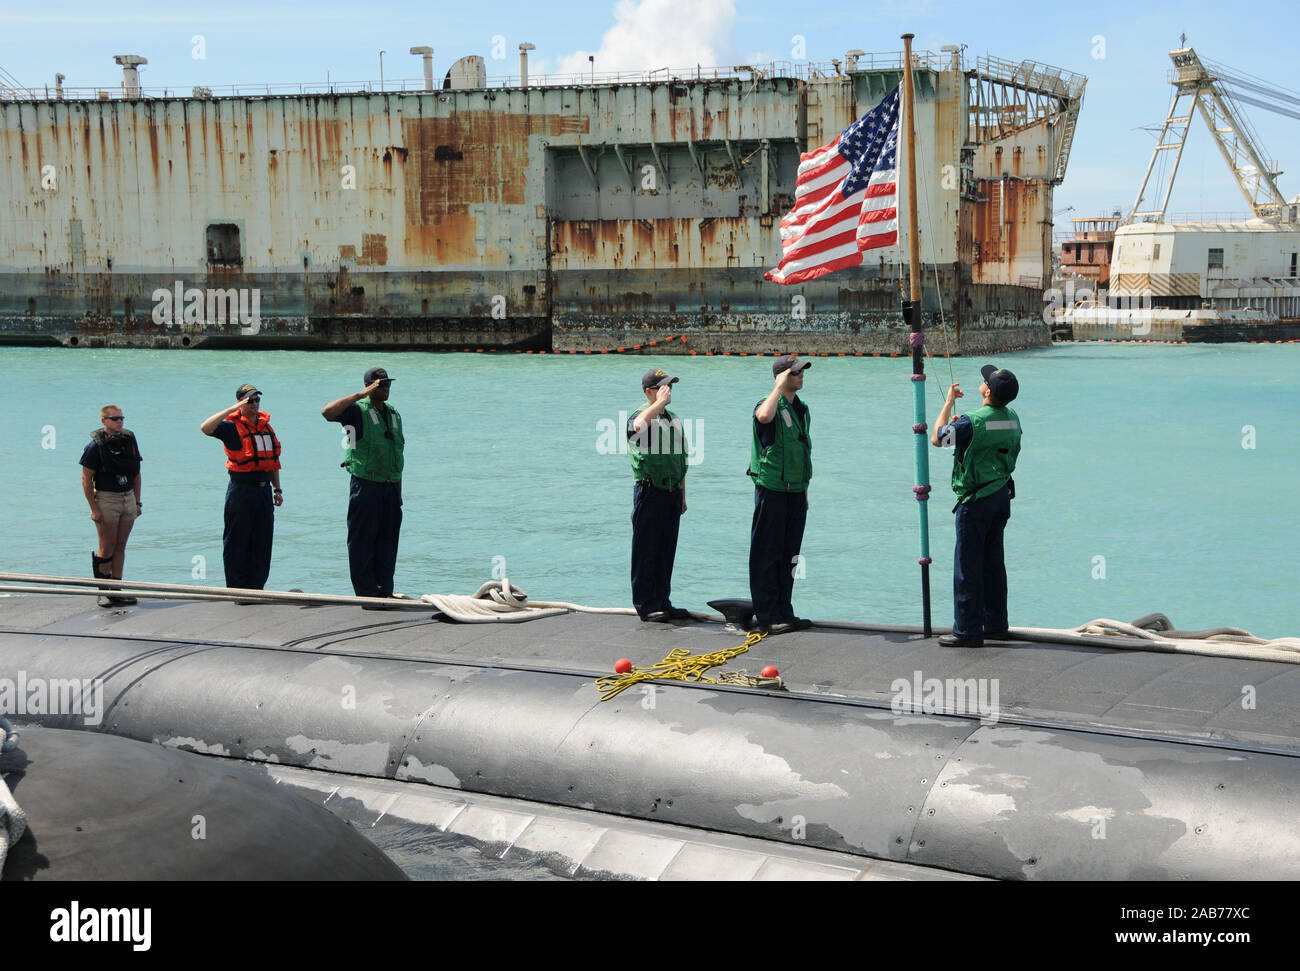 APRA HARBOR, Guam (15. April 2013) Matrosen an Bord der Los Angeles-Klasse Angriffs-U-Boot USS Charlotte (SSN 766) verschieben Sie Farben nach dem u-boot Mauren in Apra Harbor Wartung und Freiheit zu führen. Stockfoto